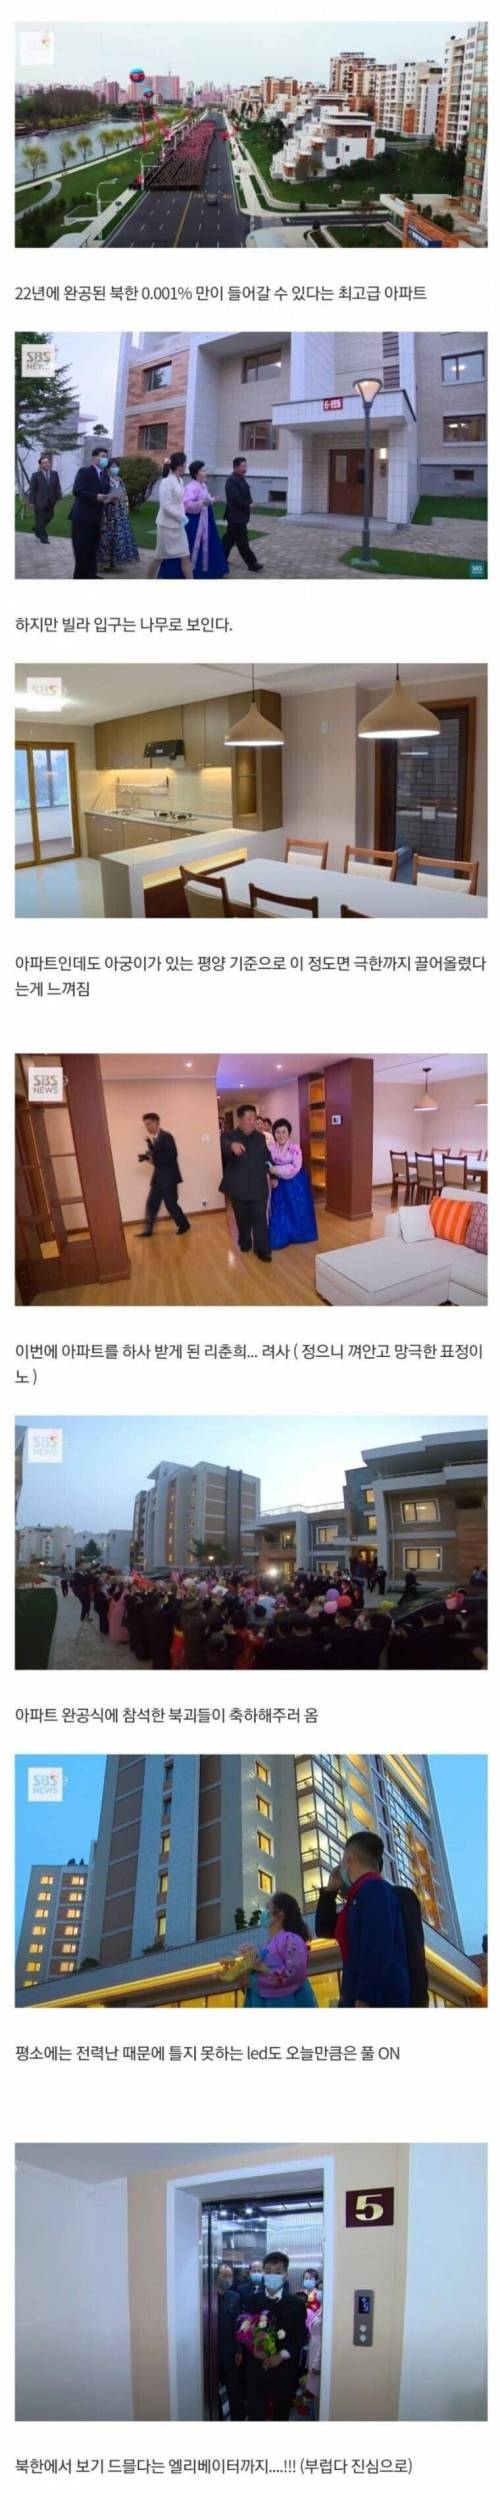 2 북한 고급 아파트.jpg